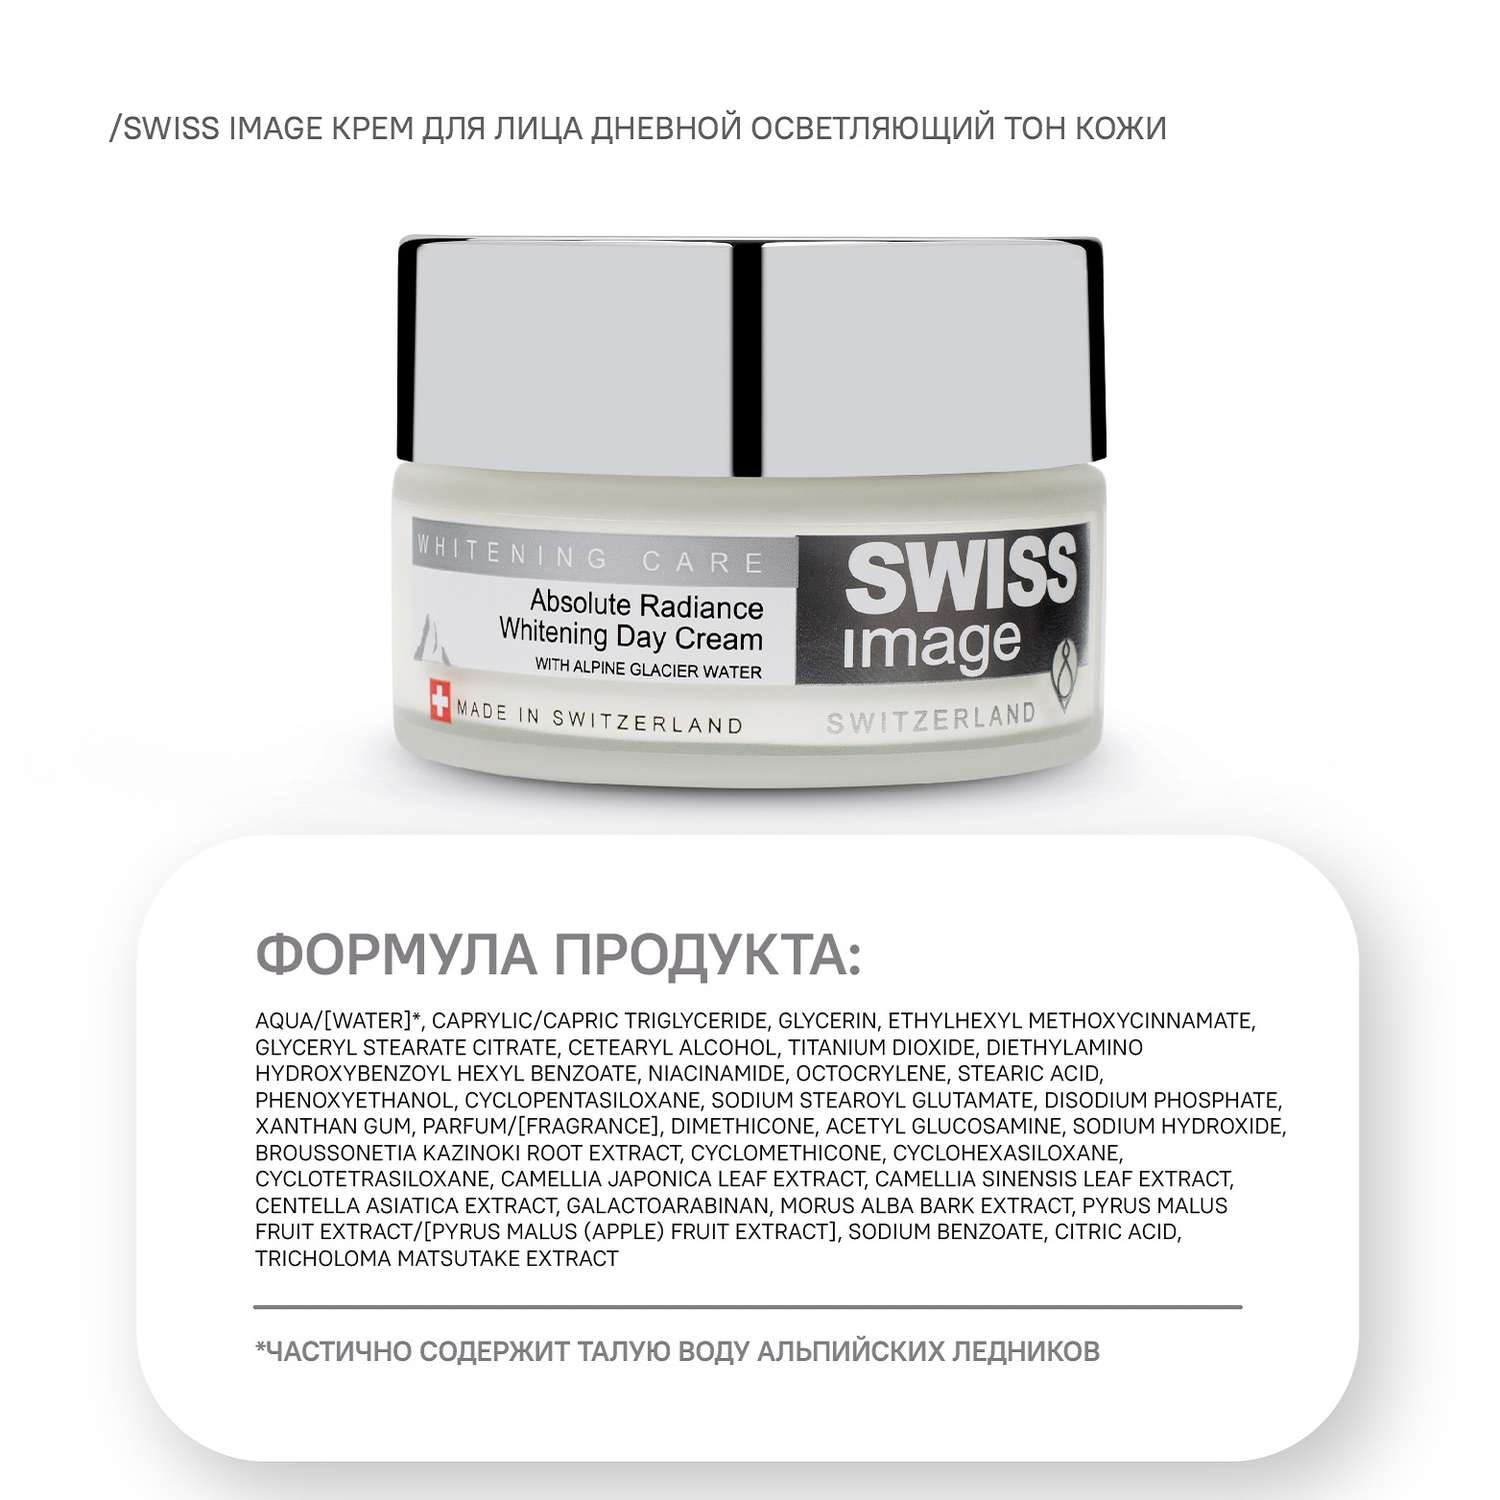 Осветляющий дневной крем Swiss image для лица выравнивающий тон кожи 50 мл - фото 8